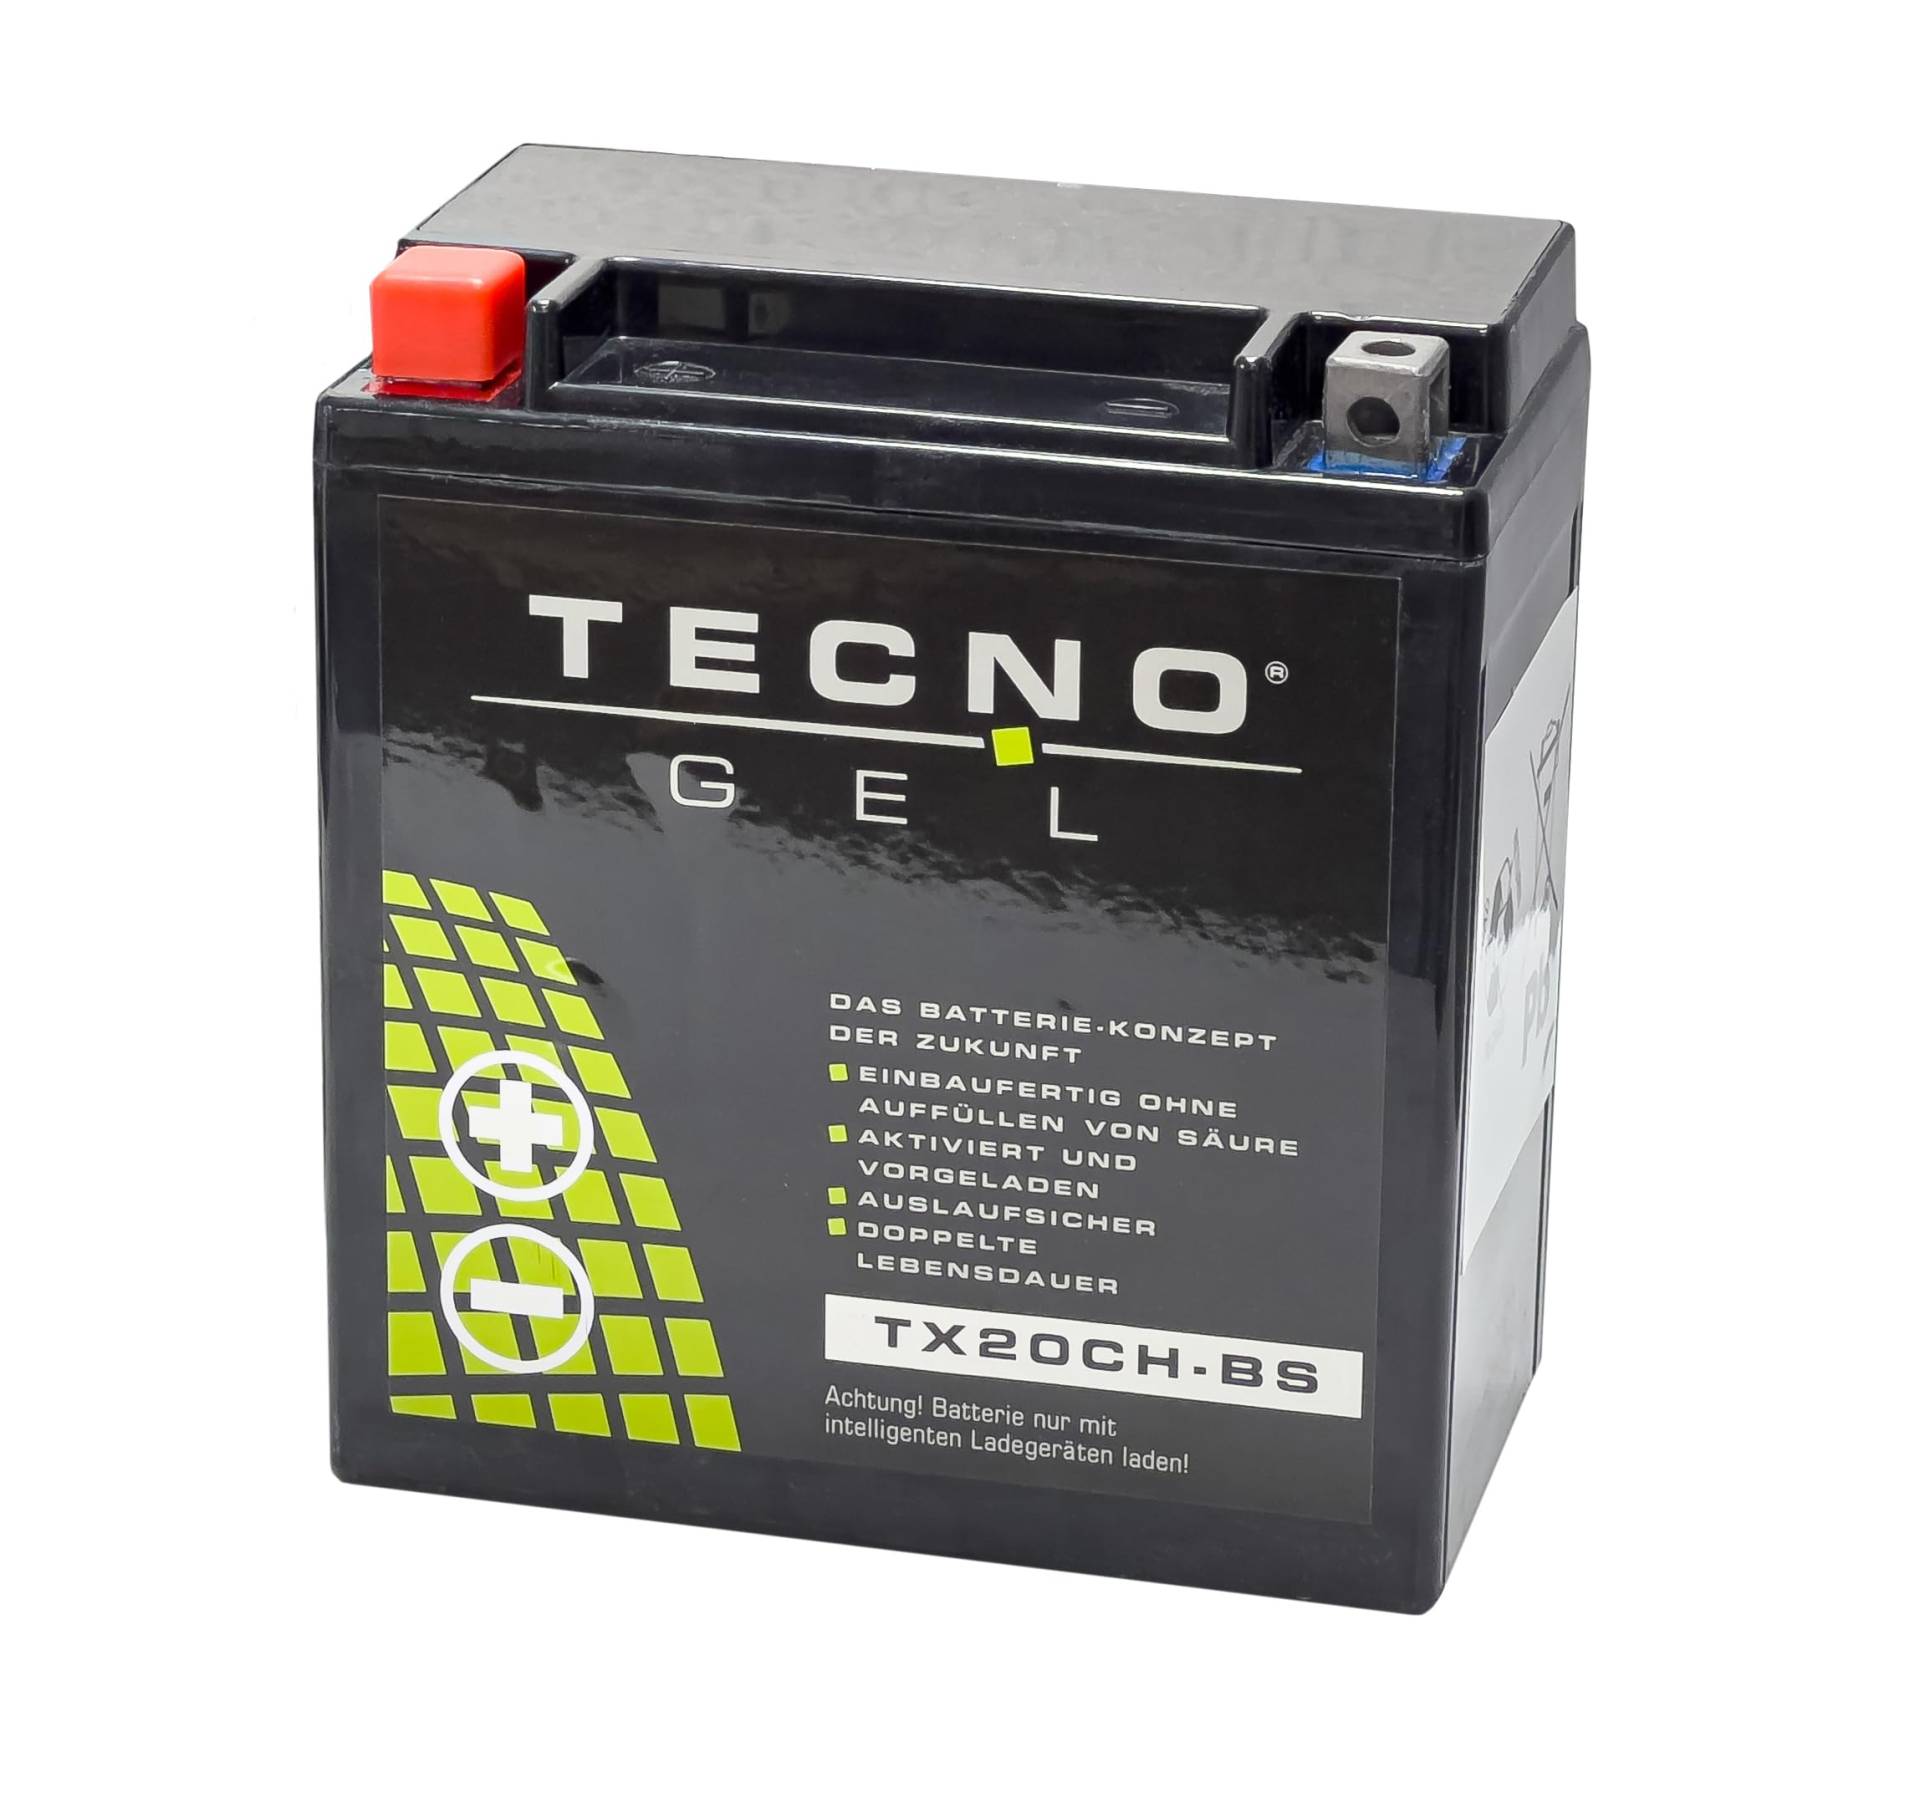 TECNO-GEL Motorrad-Batterie für YTX20CH-BS für SUZUKI VLR 1800 C Intruder 2008-2012, 12V Gel-Batterie 18Ah, 150x87x161 mm von Wirth-Federn